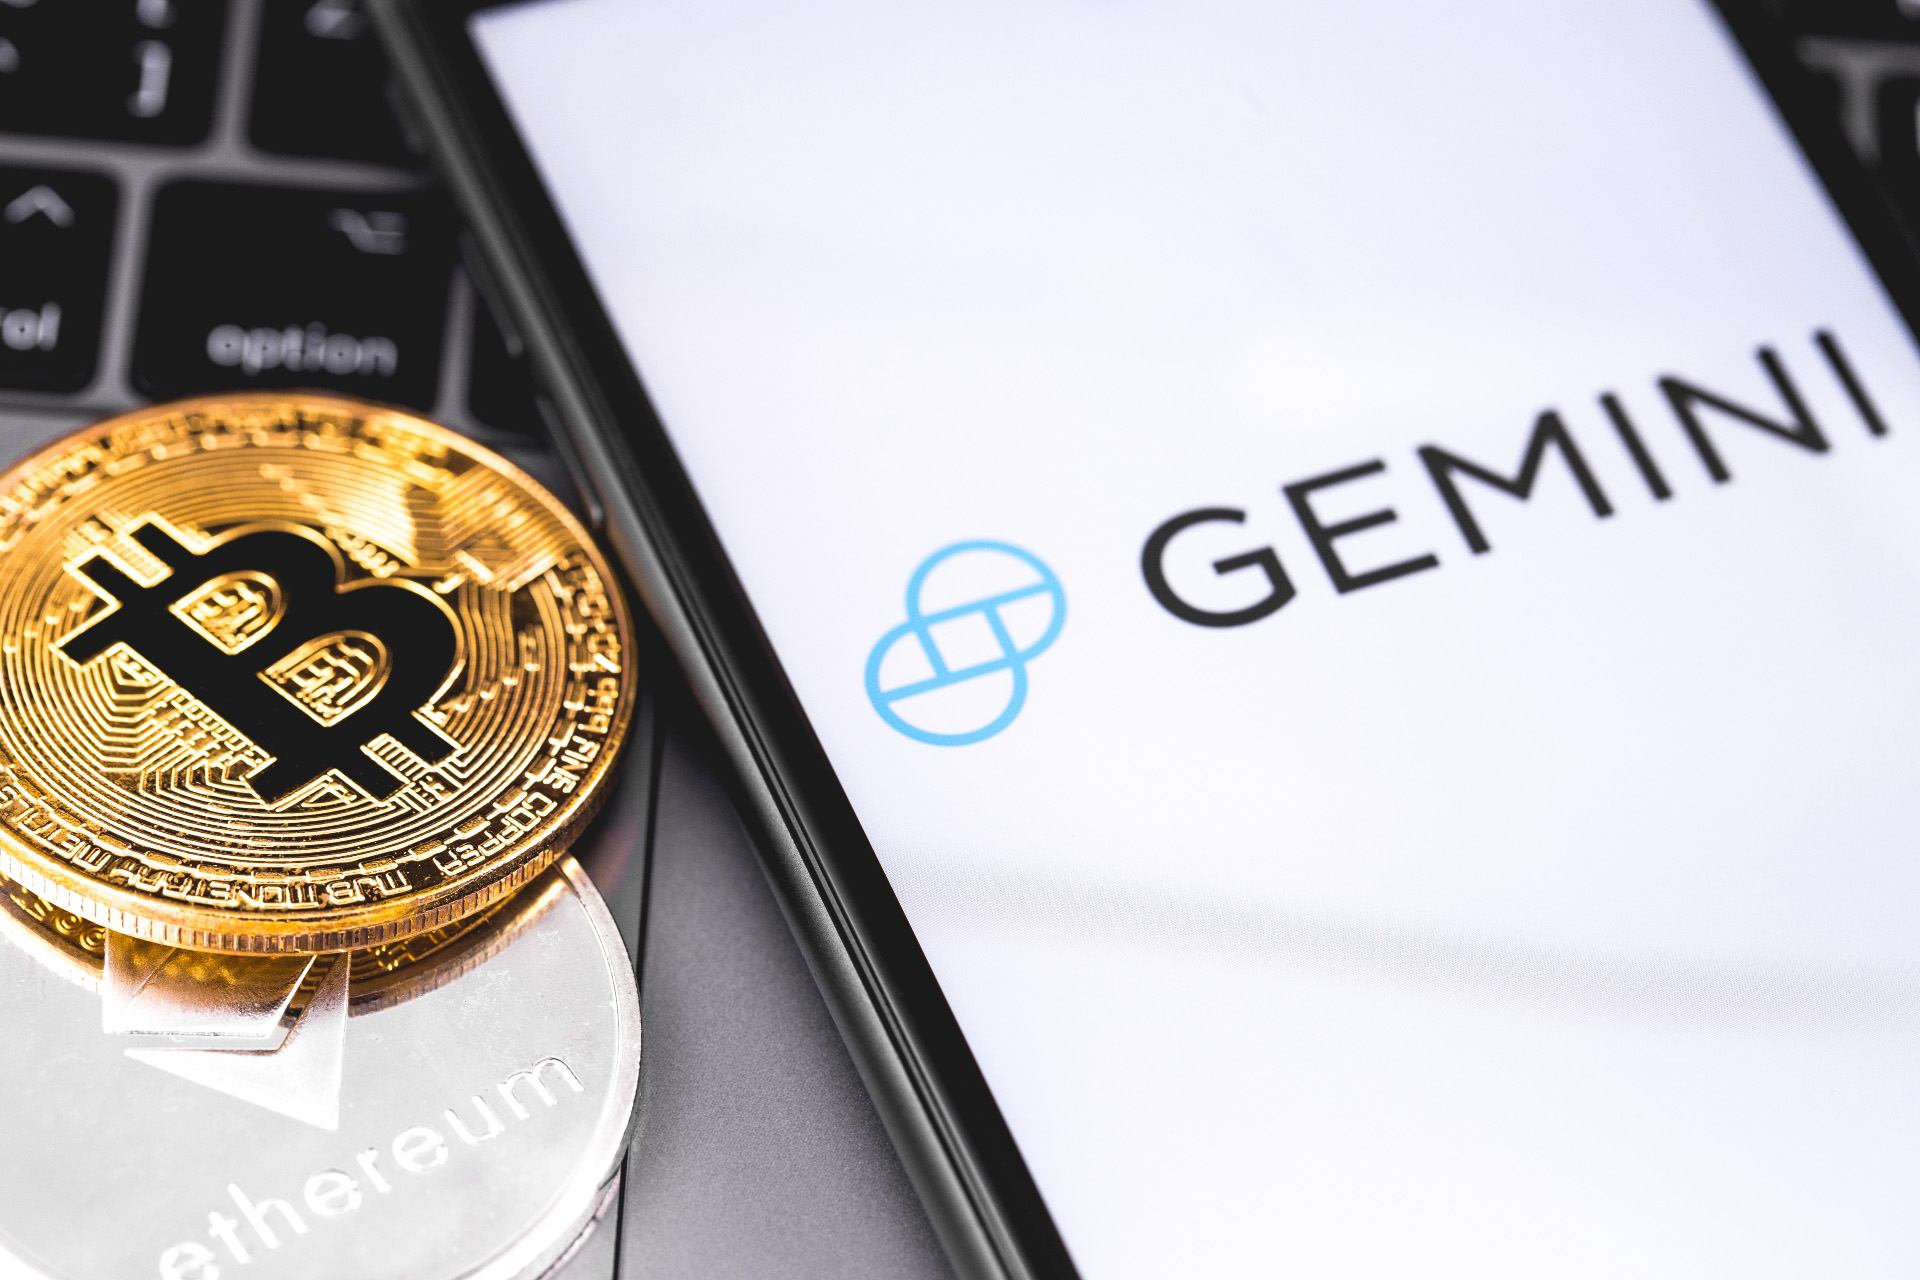 gemini crypto website